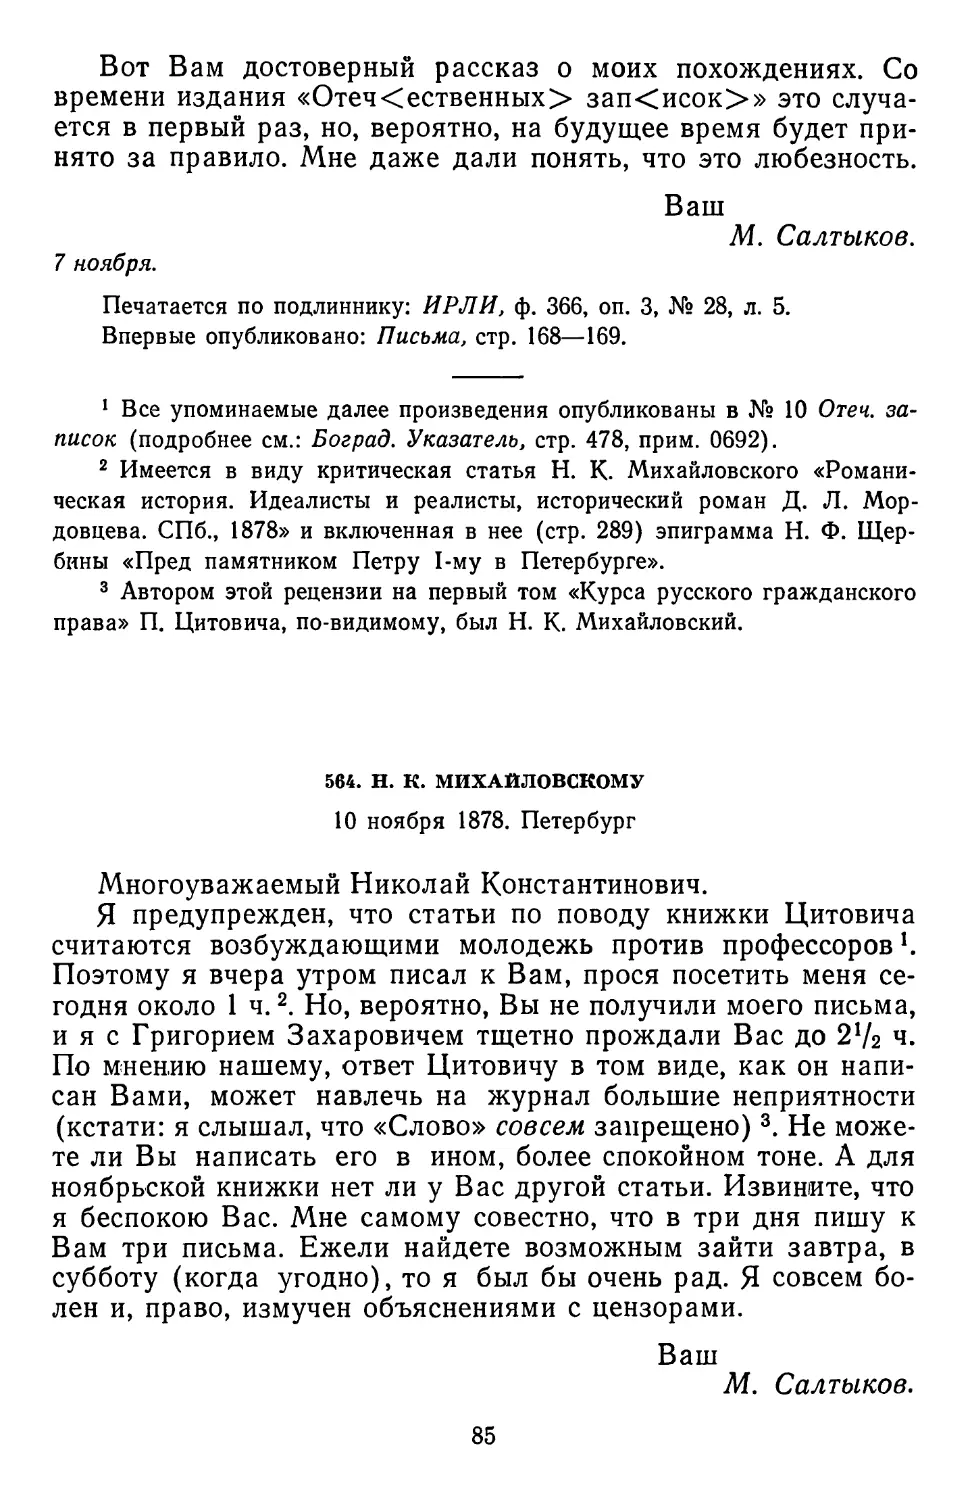 564.Н. К. Михайловскому. 10 ноября 1878. Петербург